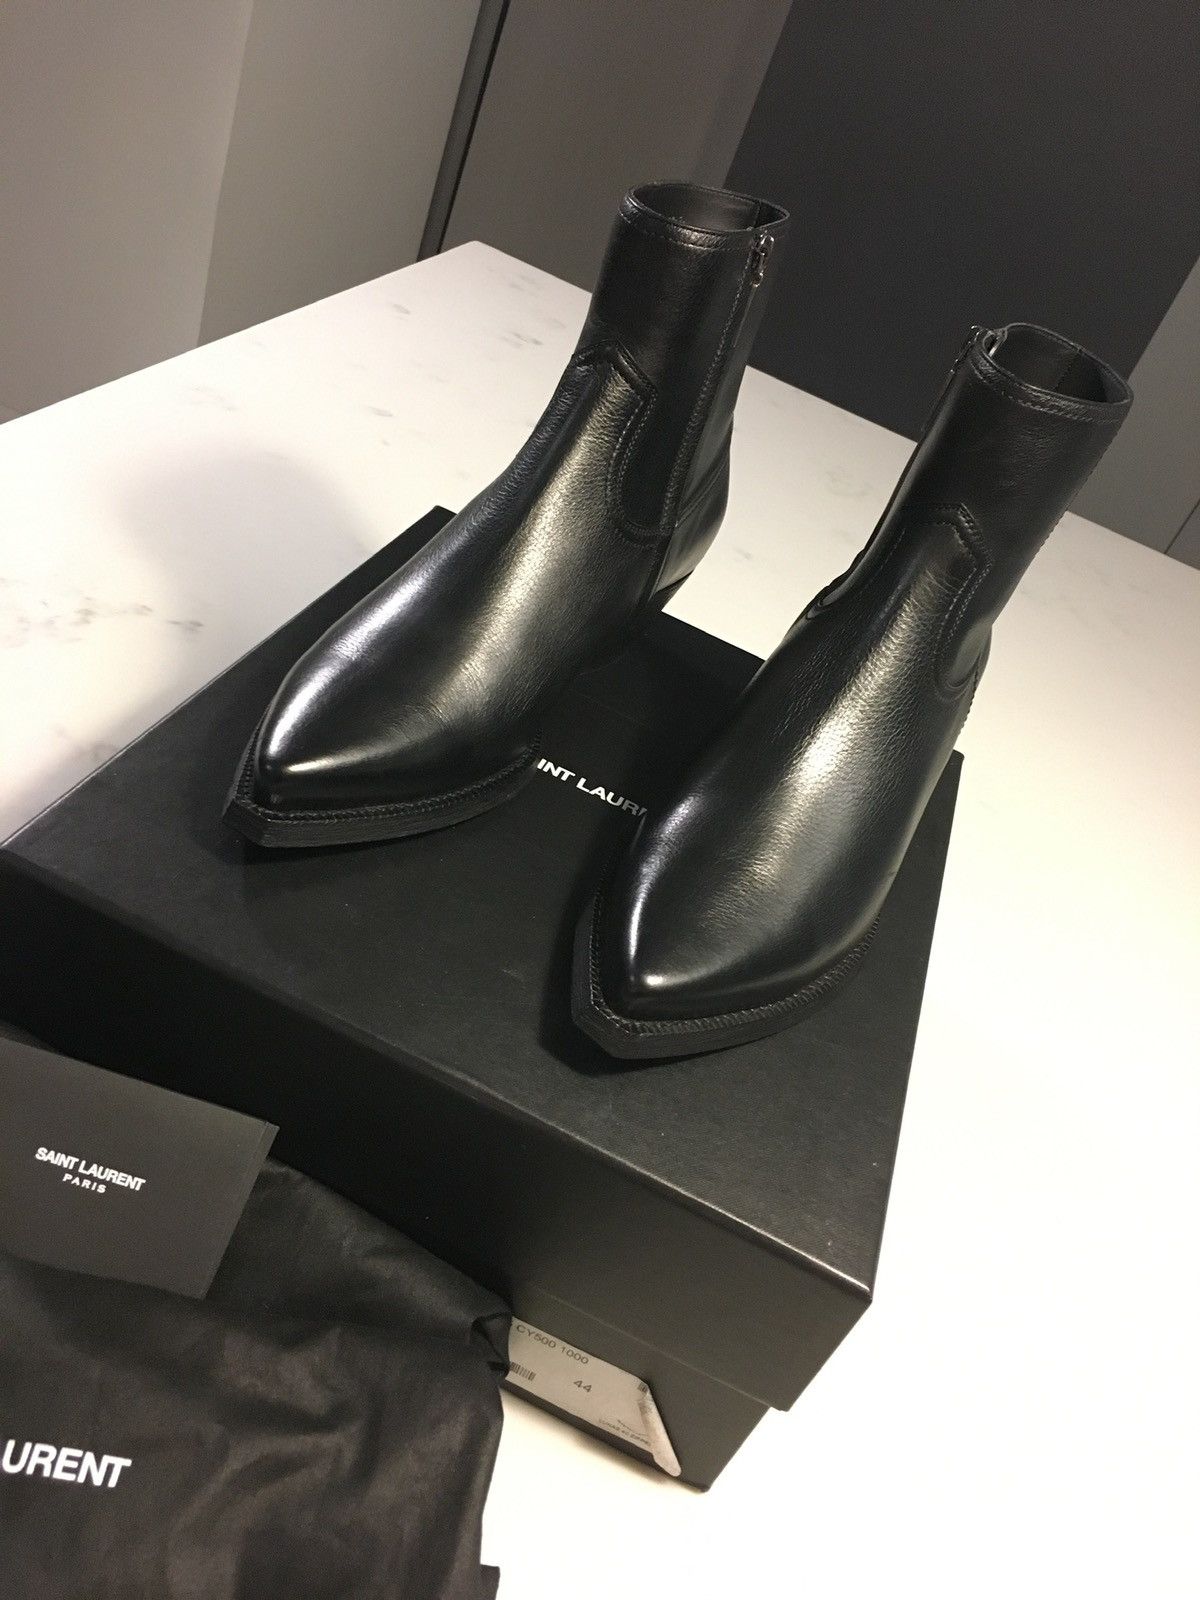 Saint Laurent Paris Saint Laurent Lukas Boots - Size 44 - Black Leather ...